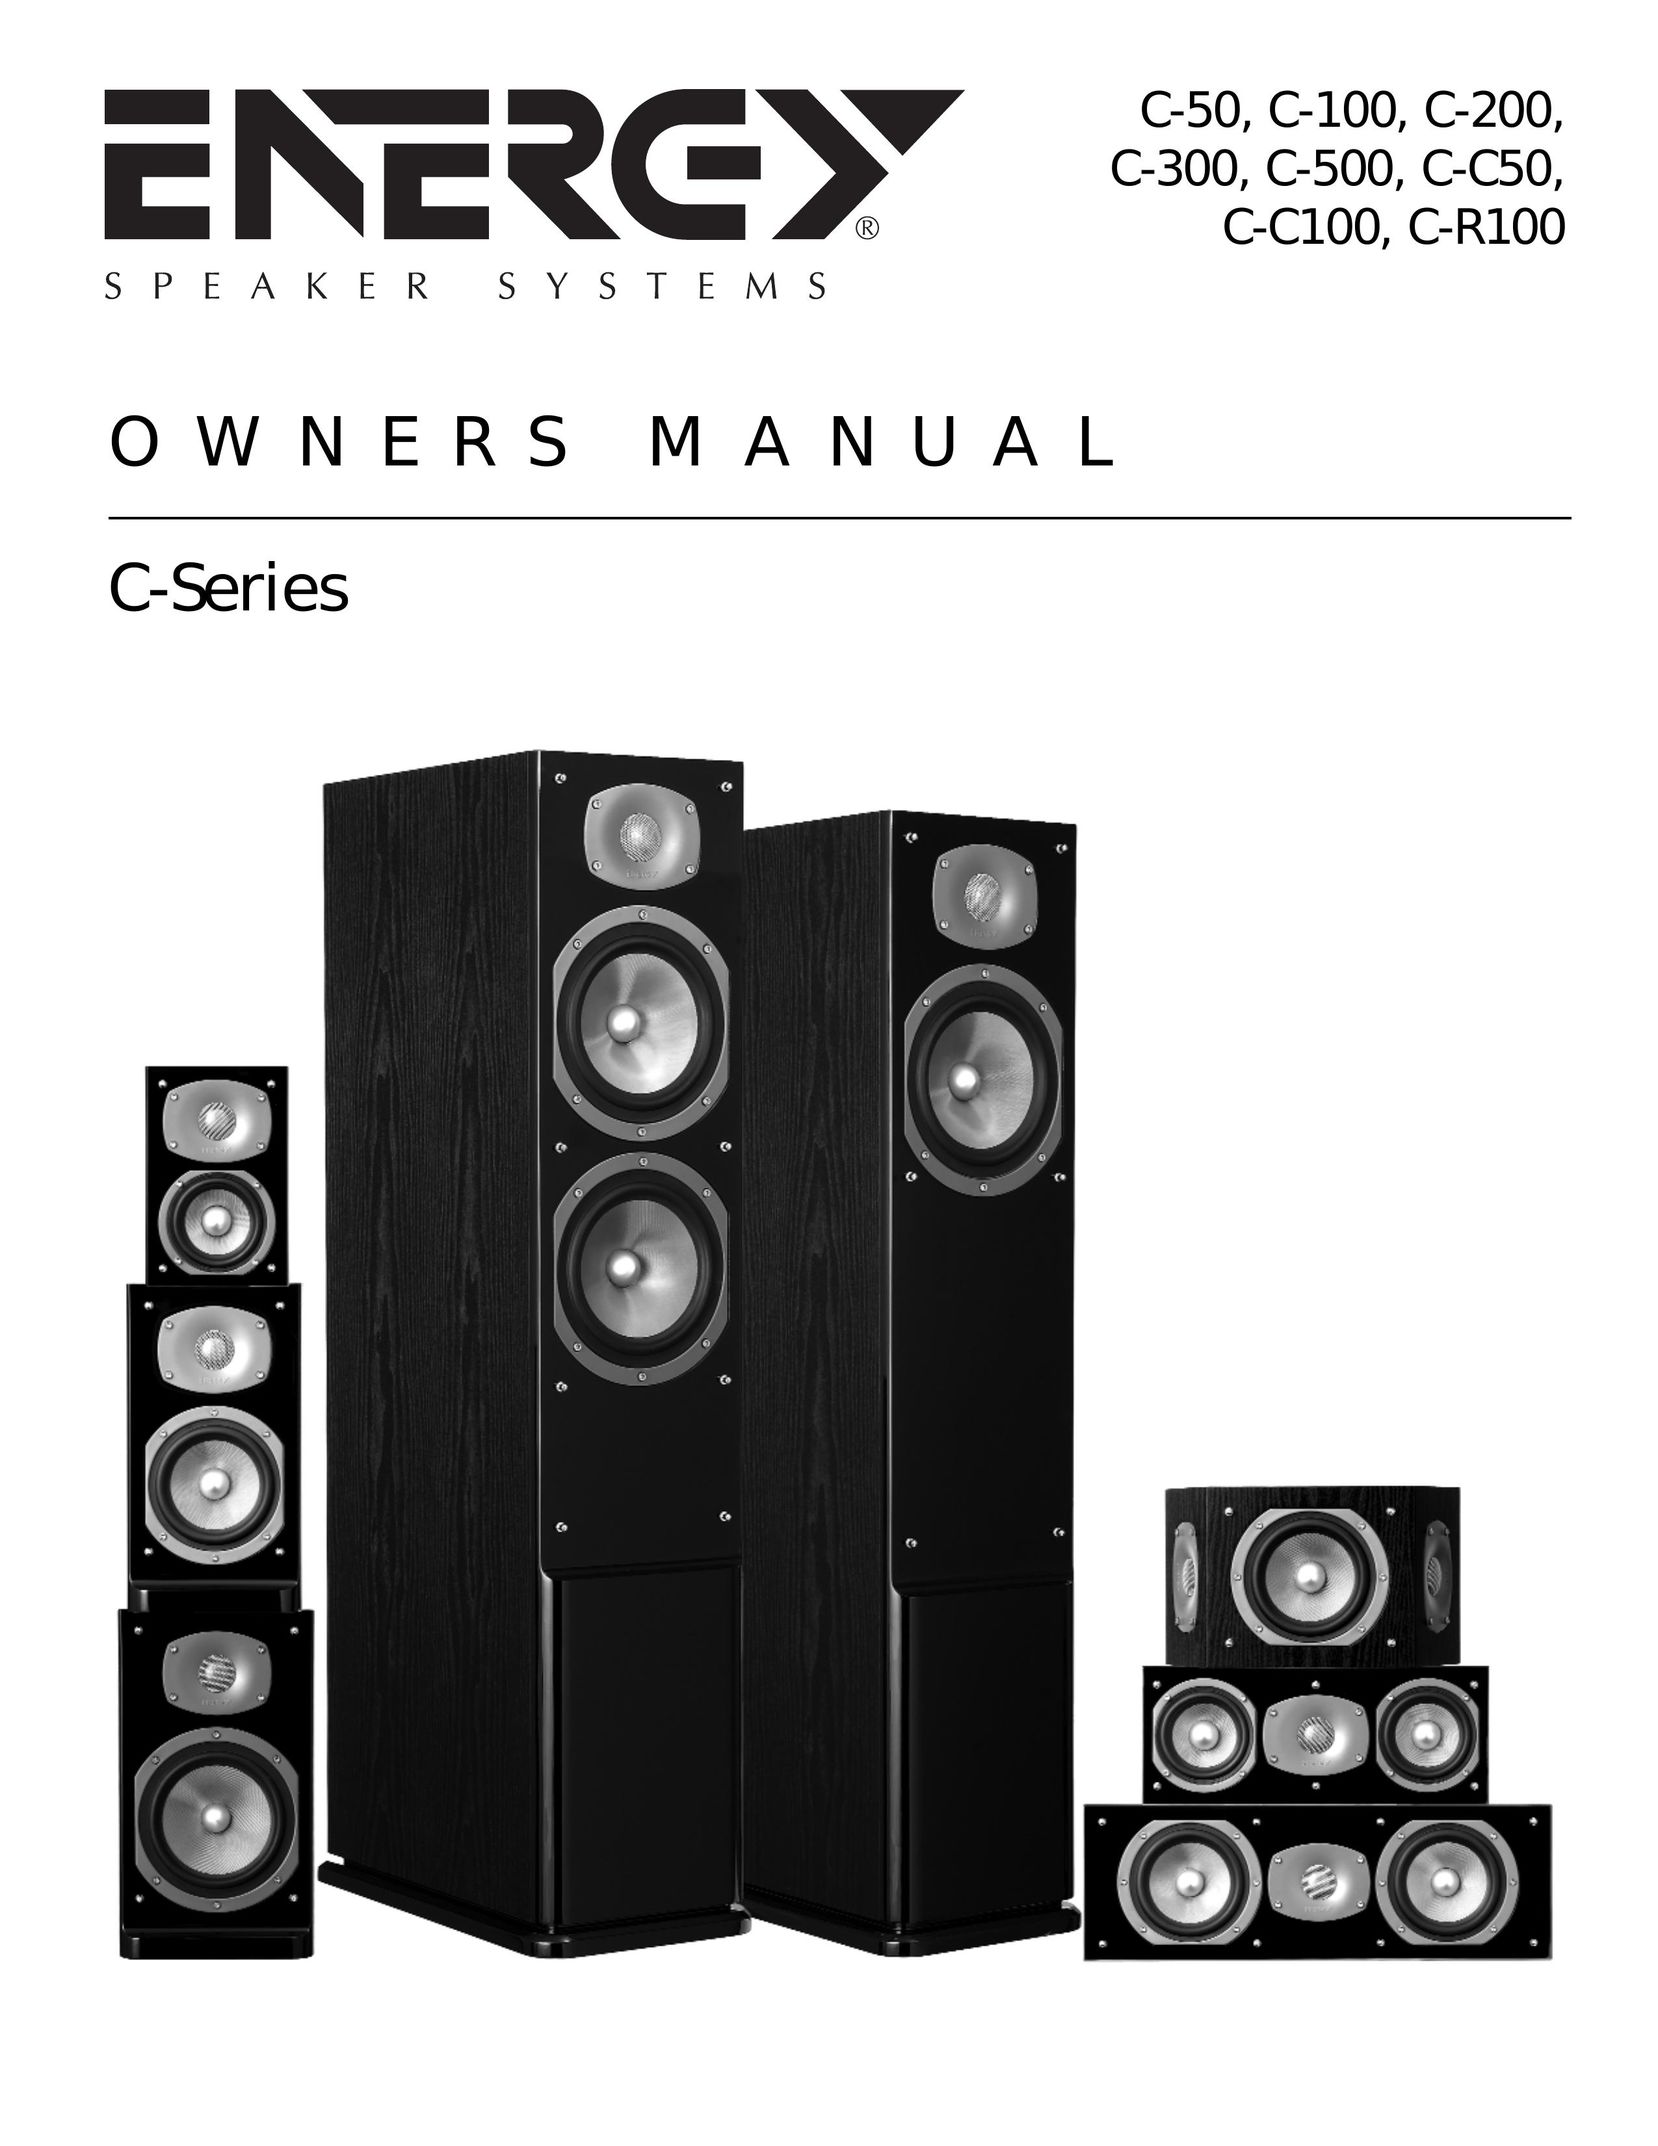 Energy Speaker Systems C-300 Speaker User Manual